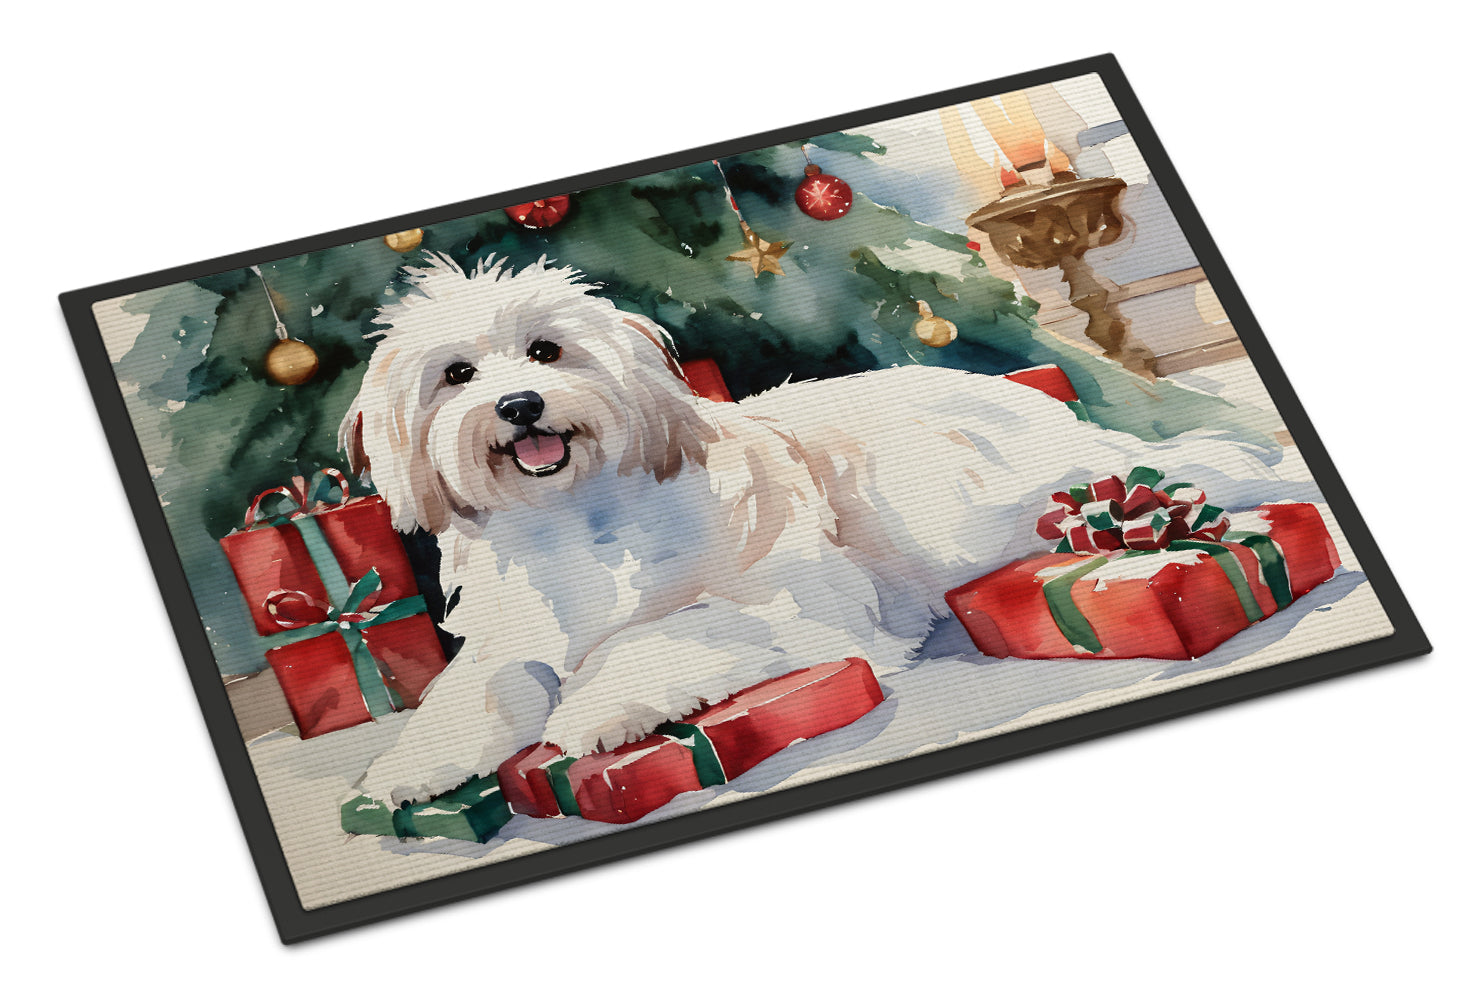 Buy this Coton De Tulear Cozy Christmas Doormat